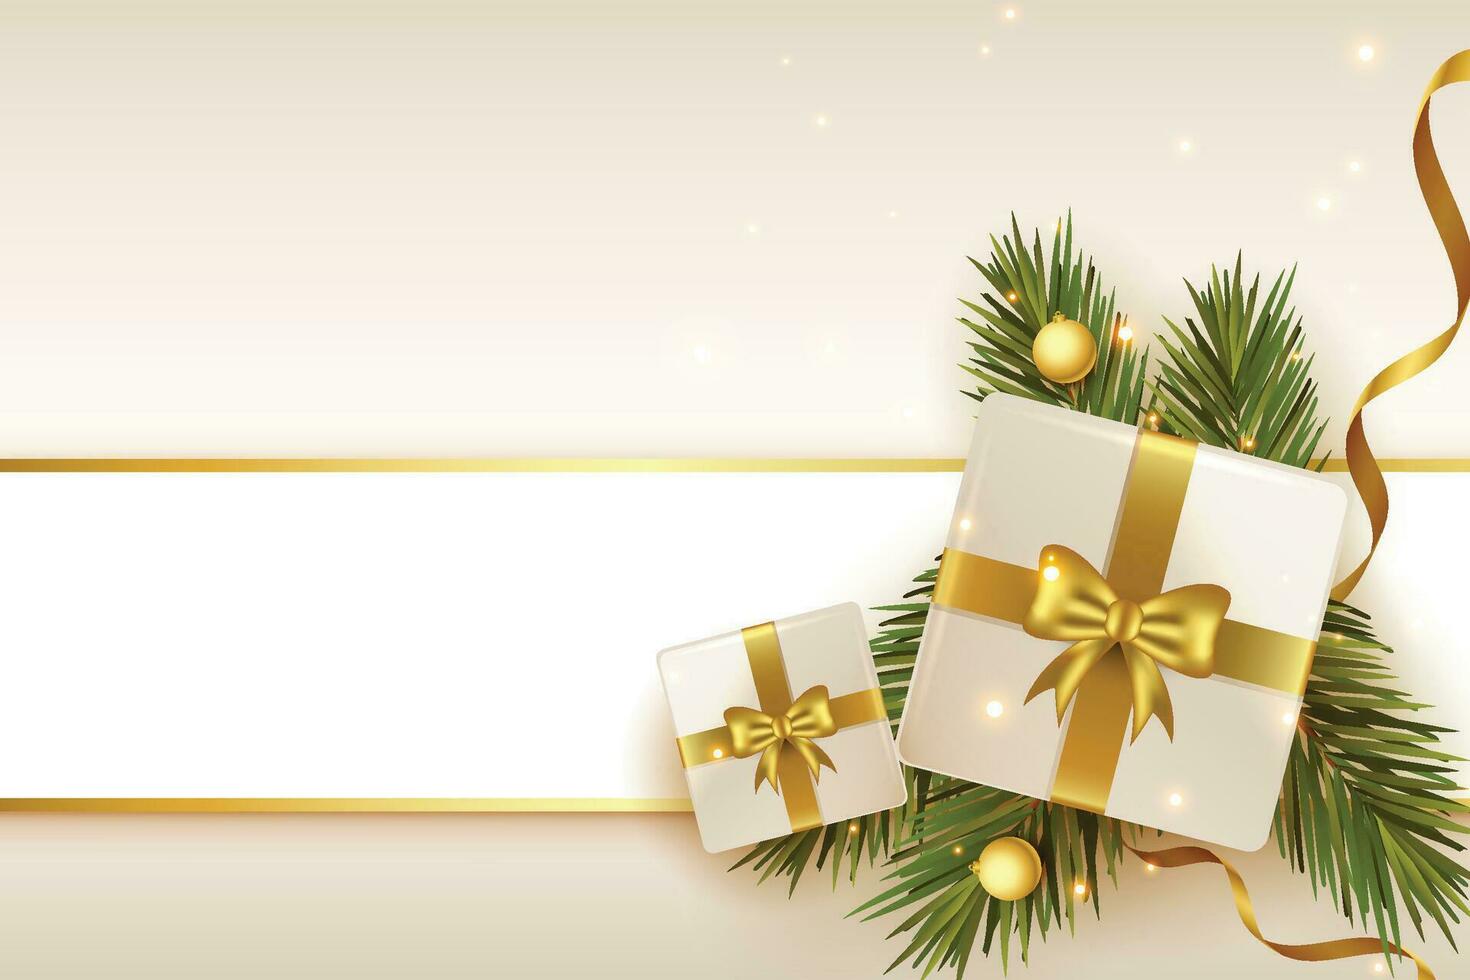 Kerstmis ballen, vakantie cadeaus met gouden boog, Spar boom takken, pijnboom kegels en glimmend sterren. illustratie kan worden gebruikt voor Kerstmis ontwerp, affiches, kaarten, websites en spandoeken. vector